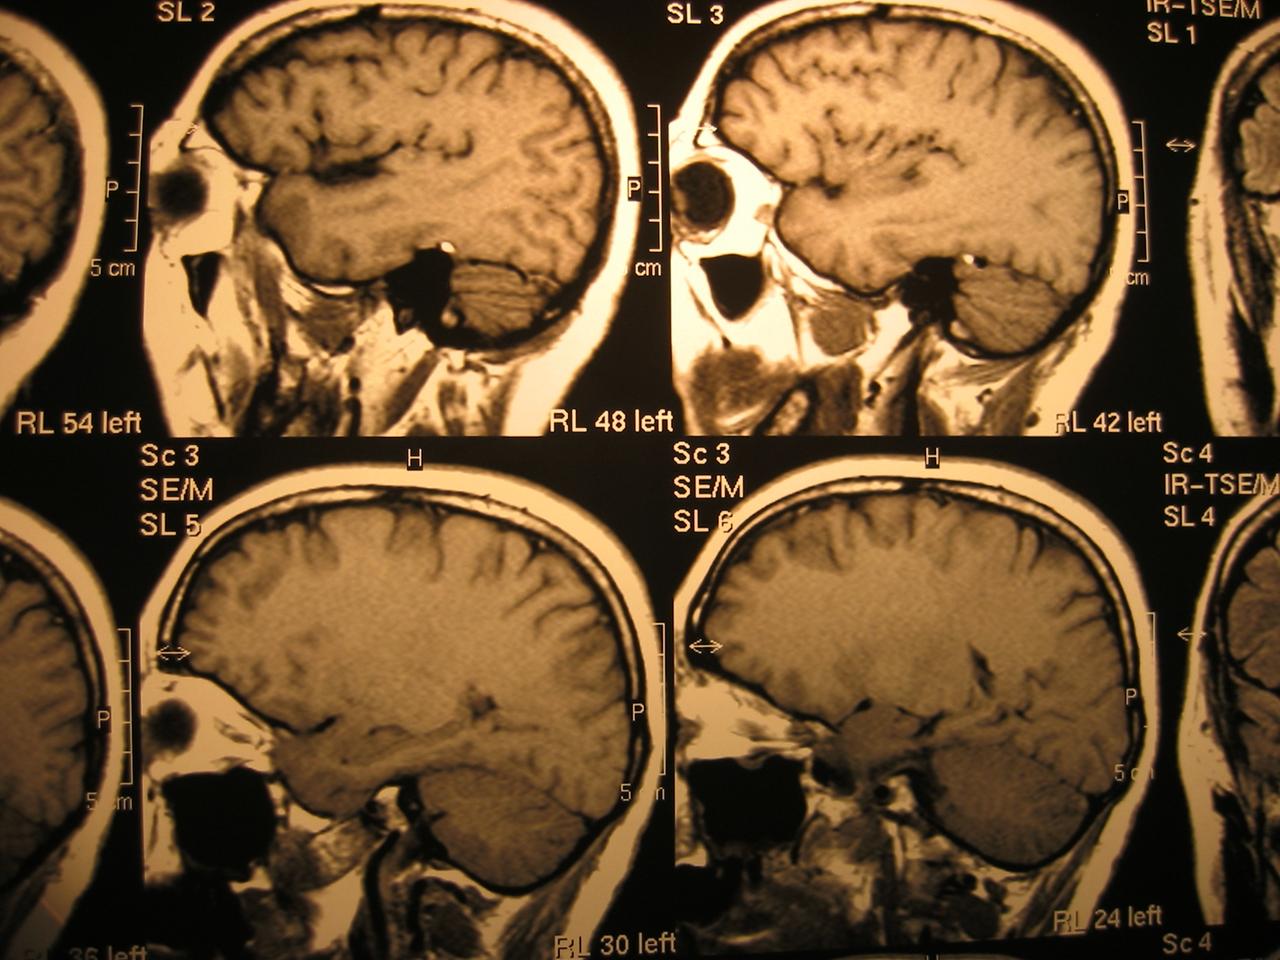 Die Studie besagt, dass Patienten nach der Covid-19-Behandlung monatelang neurologische Symptome haben können